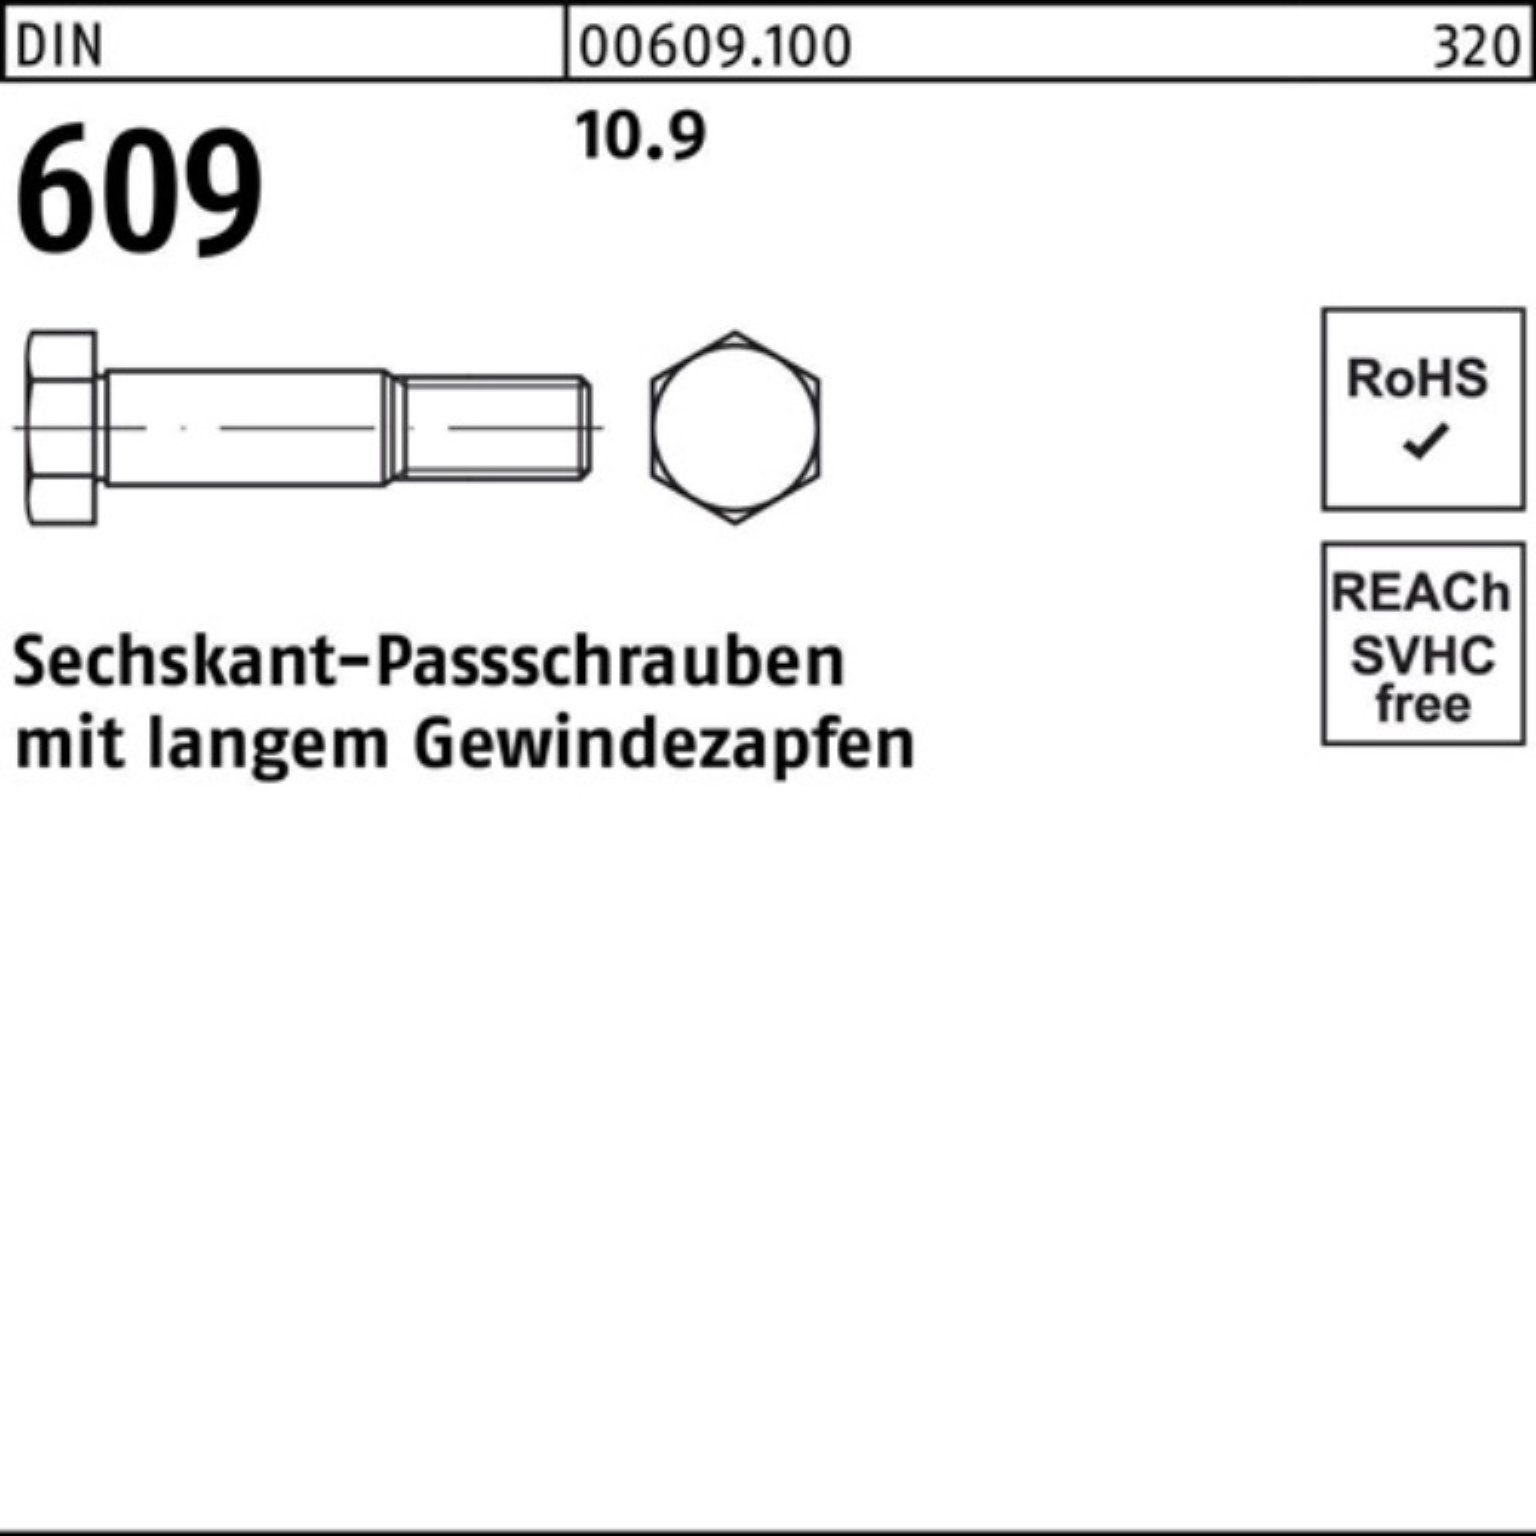 Reyher Schraube 100er Pack Sechskantpassschraube Gewindezapfen 609 langem DIN M20x 120